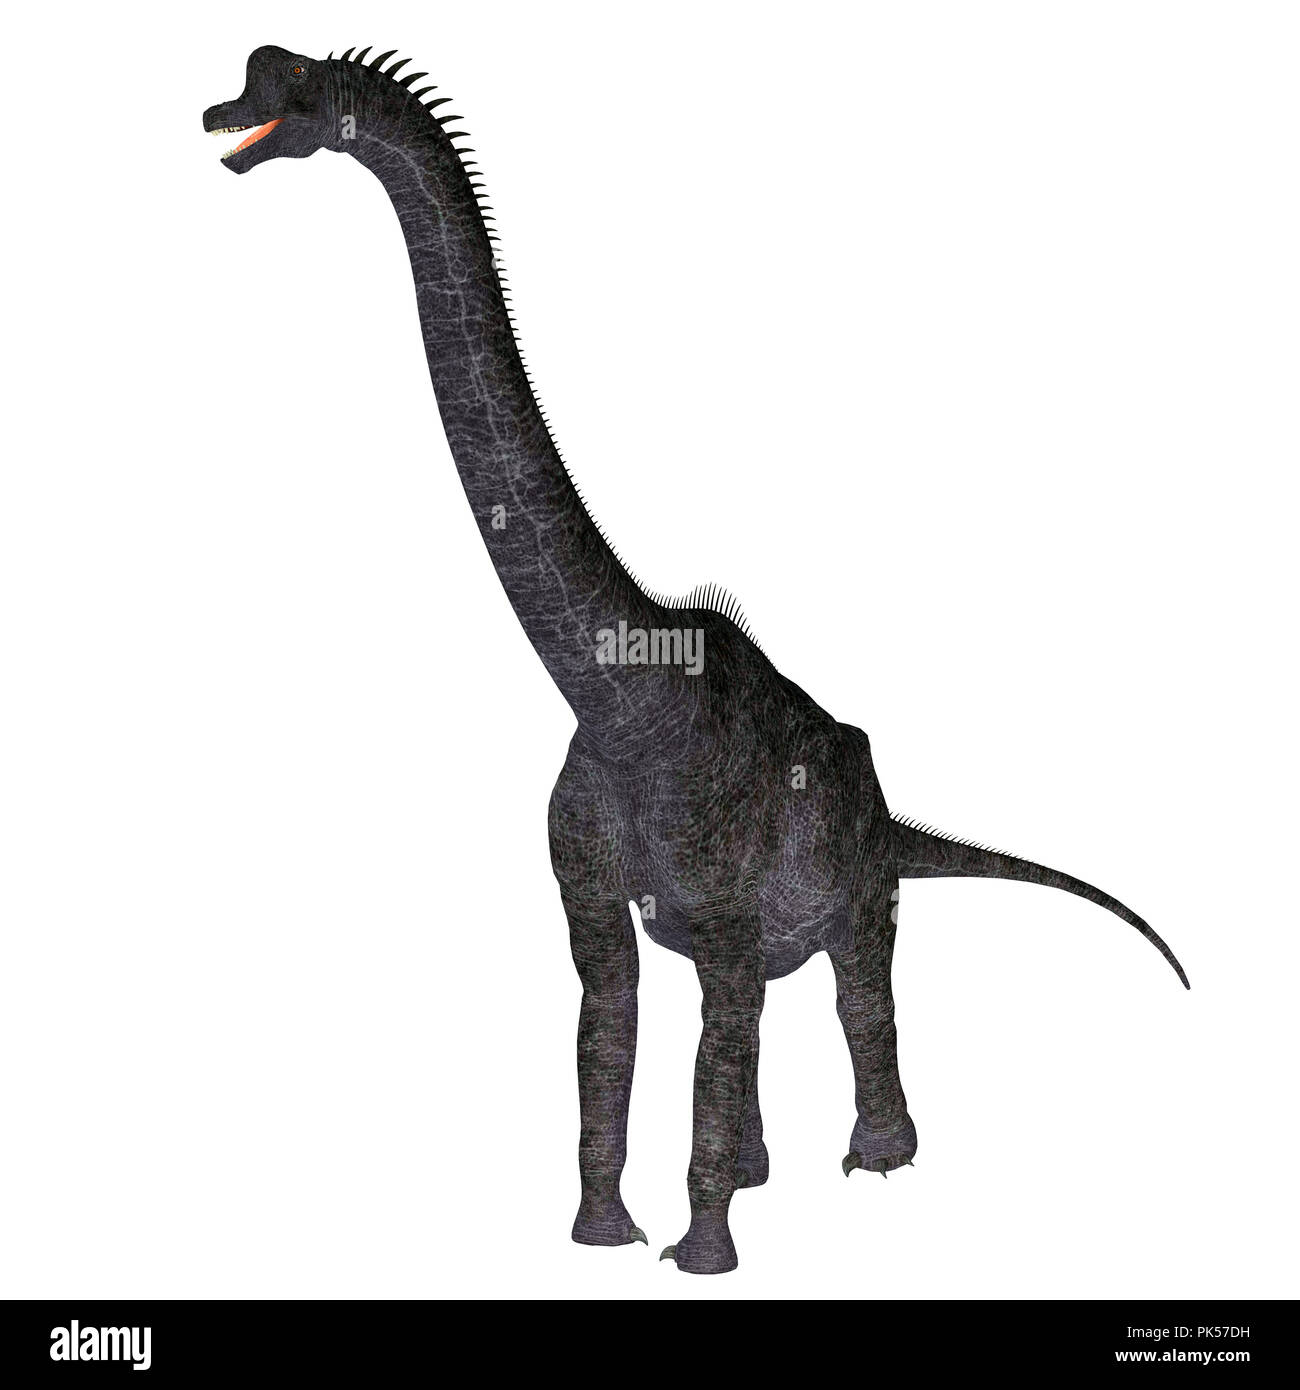 Le dinosaure Brachiosaurus Brachiosaurus - Blanc était un dinosaure sauropode herbivore qui vivait en Amérique du Nord pendant la période jurassique. Banque D'Images